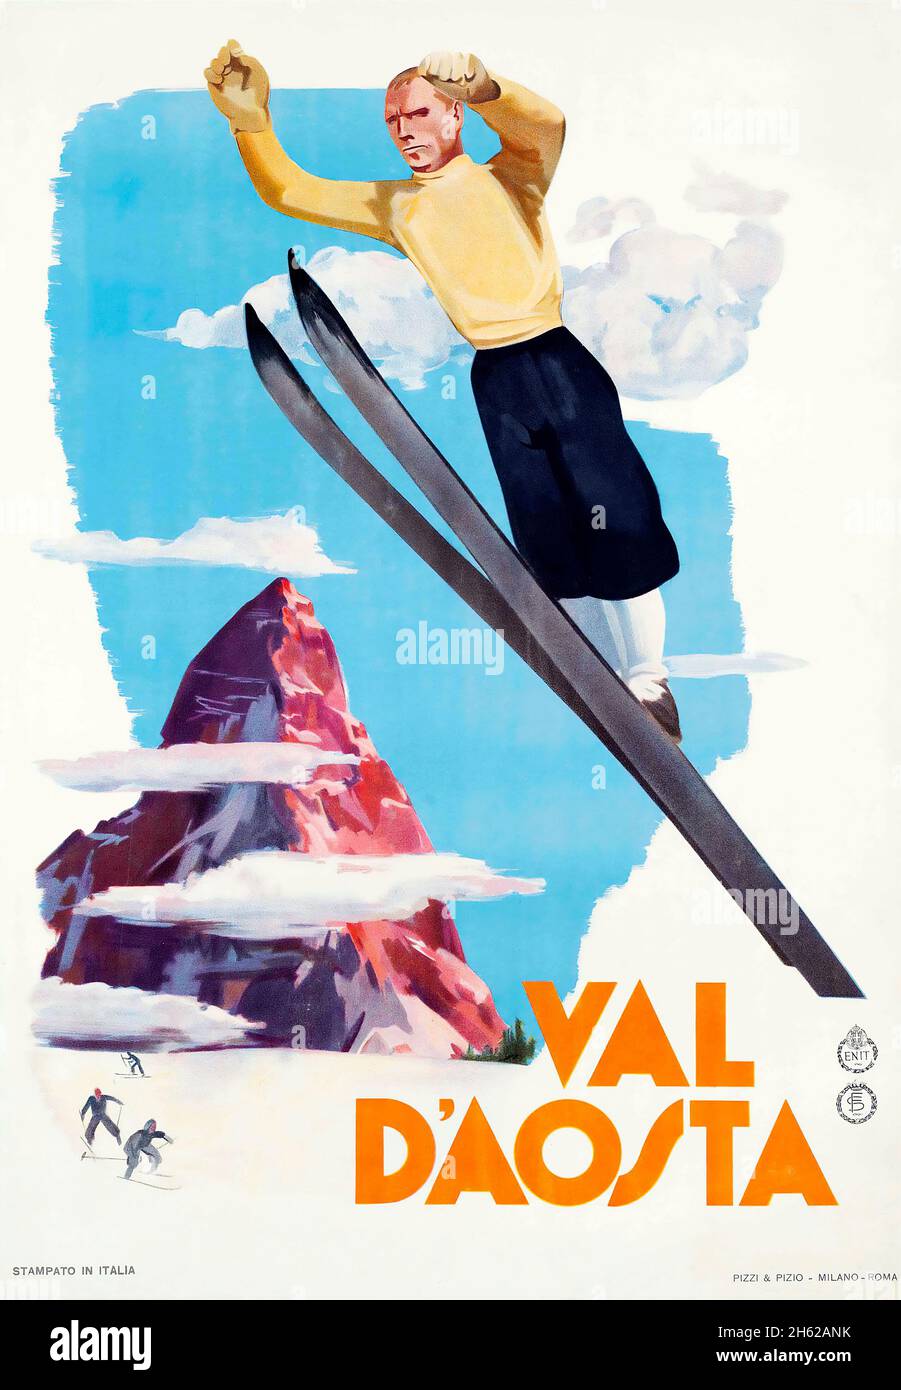 Poster im Val D'Aosta, Italien - anonymer Künstler. Vintage Travel Poster - Wintersport 1937. Skisprungschanze. Stockfoto